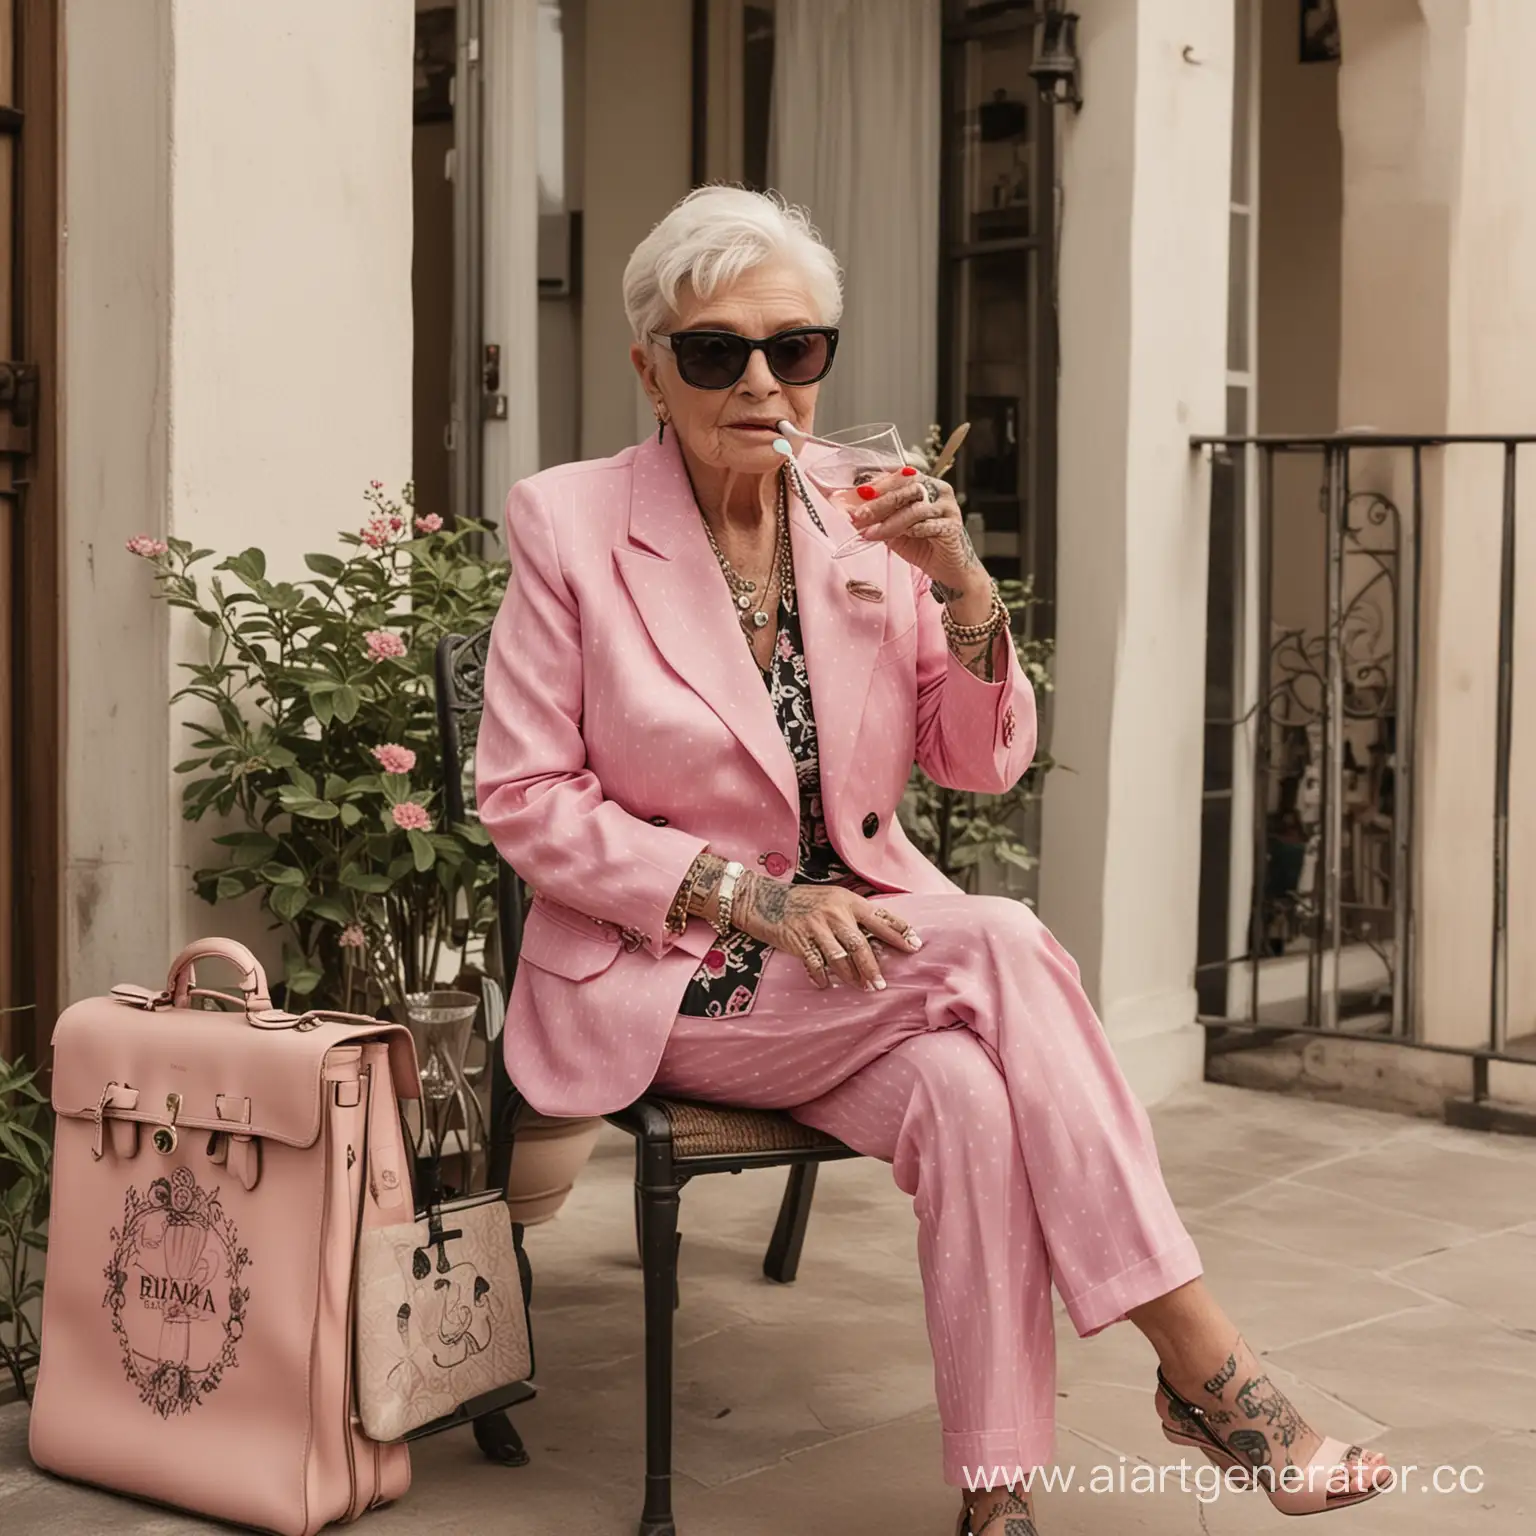 бабка, вся в татуировках, сидит на веранде итальянского дома, пьёт мартини, на ней костюм Прада розового цвета, рядом стоит сумка биркин, на ней крутые очки